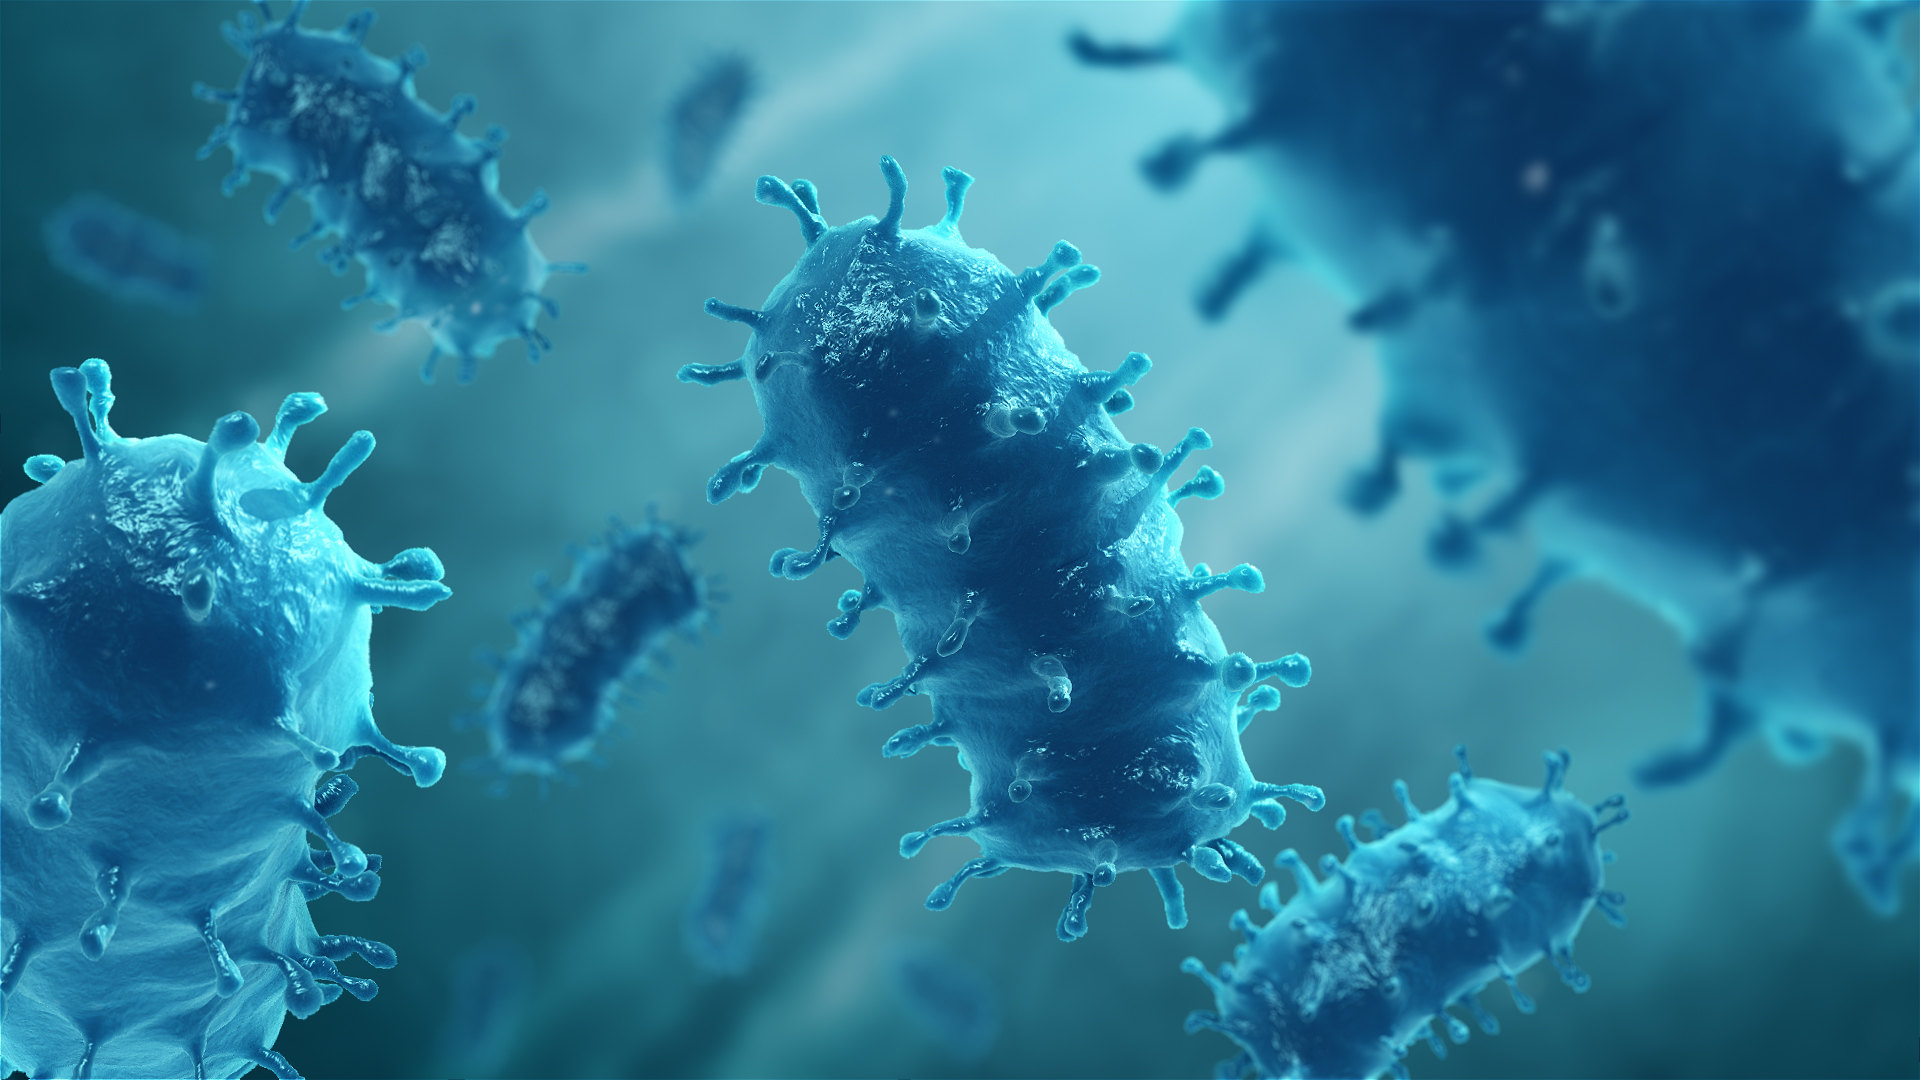 3D Medical Animation still of Rabies virus